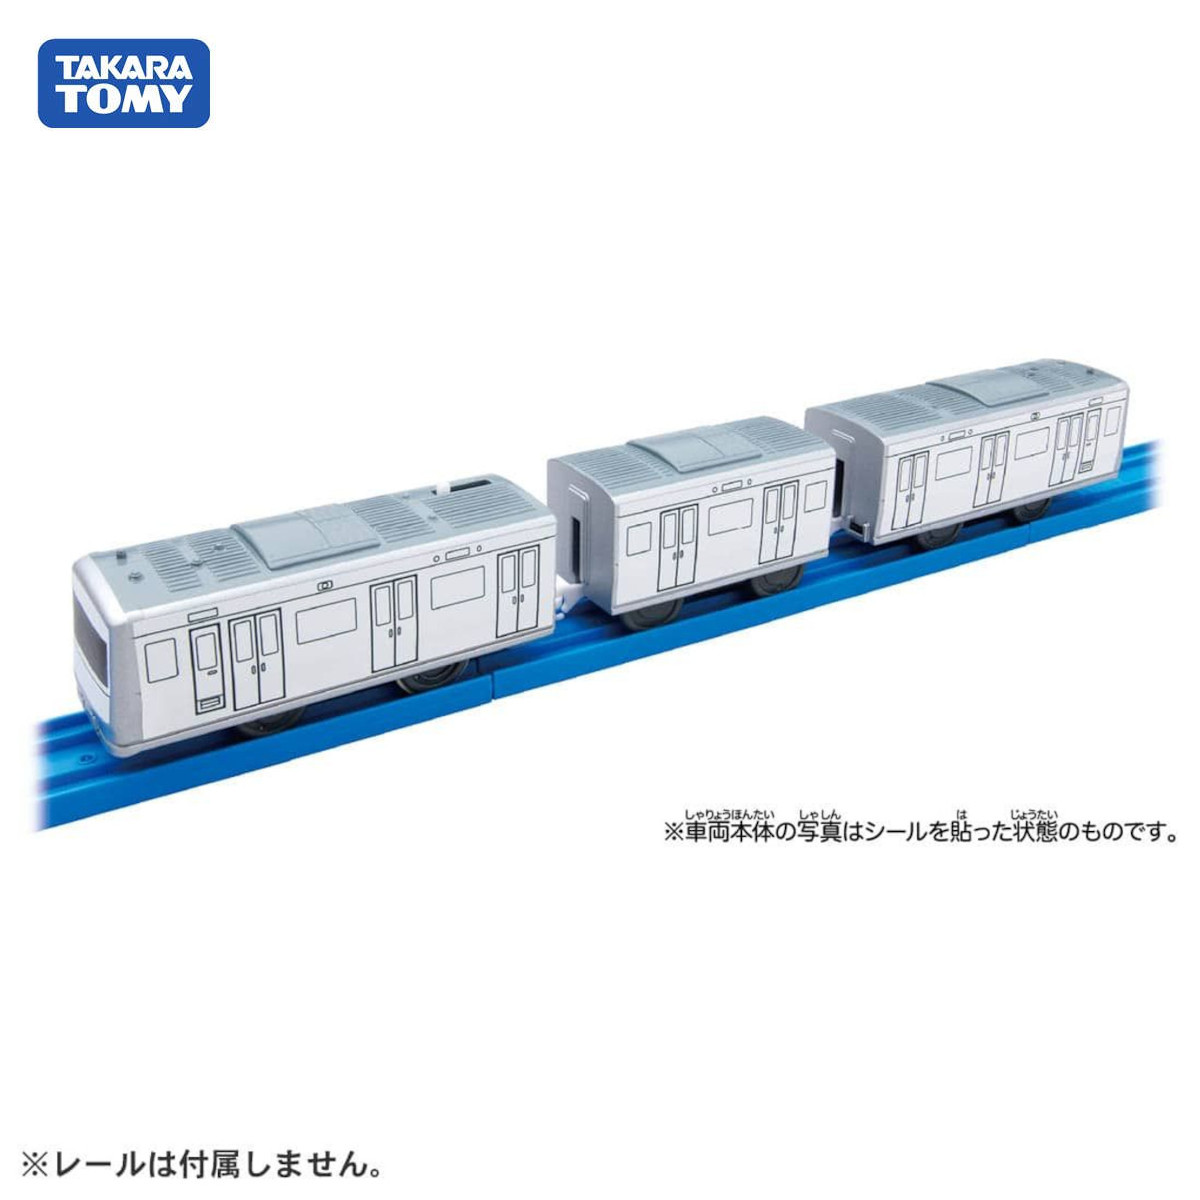 Mô hình tàu điện Takara Tomy ES-12 My Plarail Train